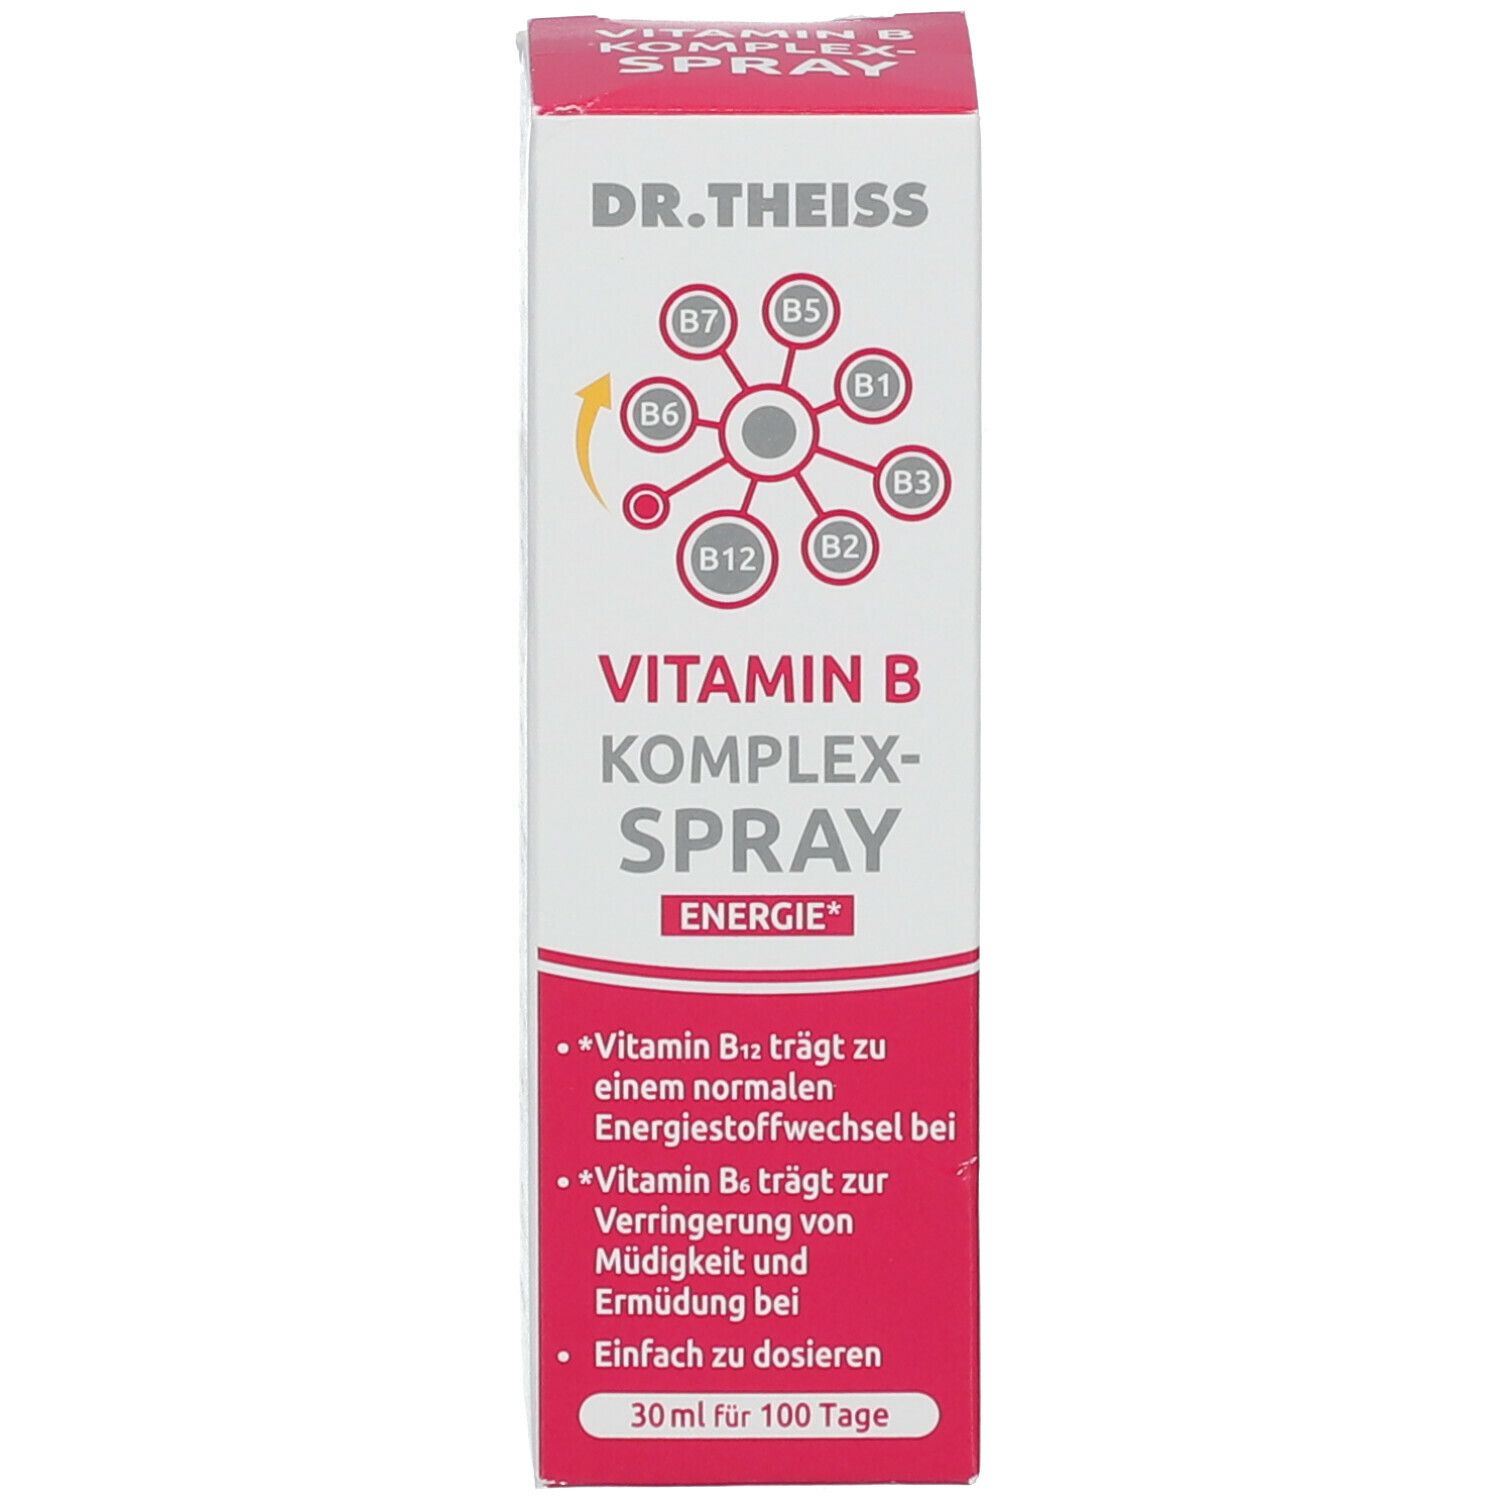 DR. THEISS Vitamin B Komplex-Spray